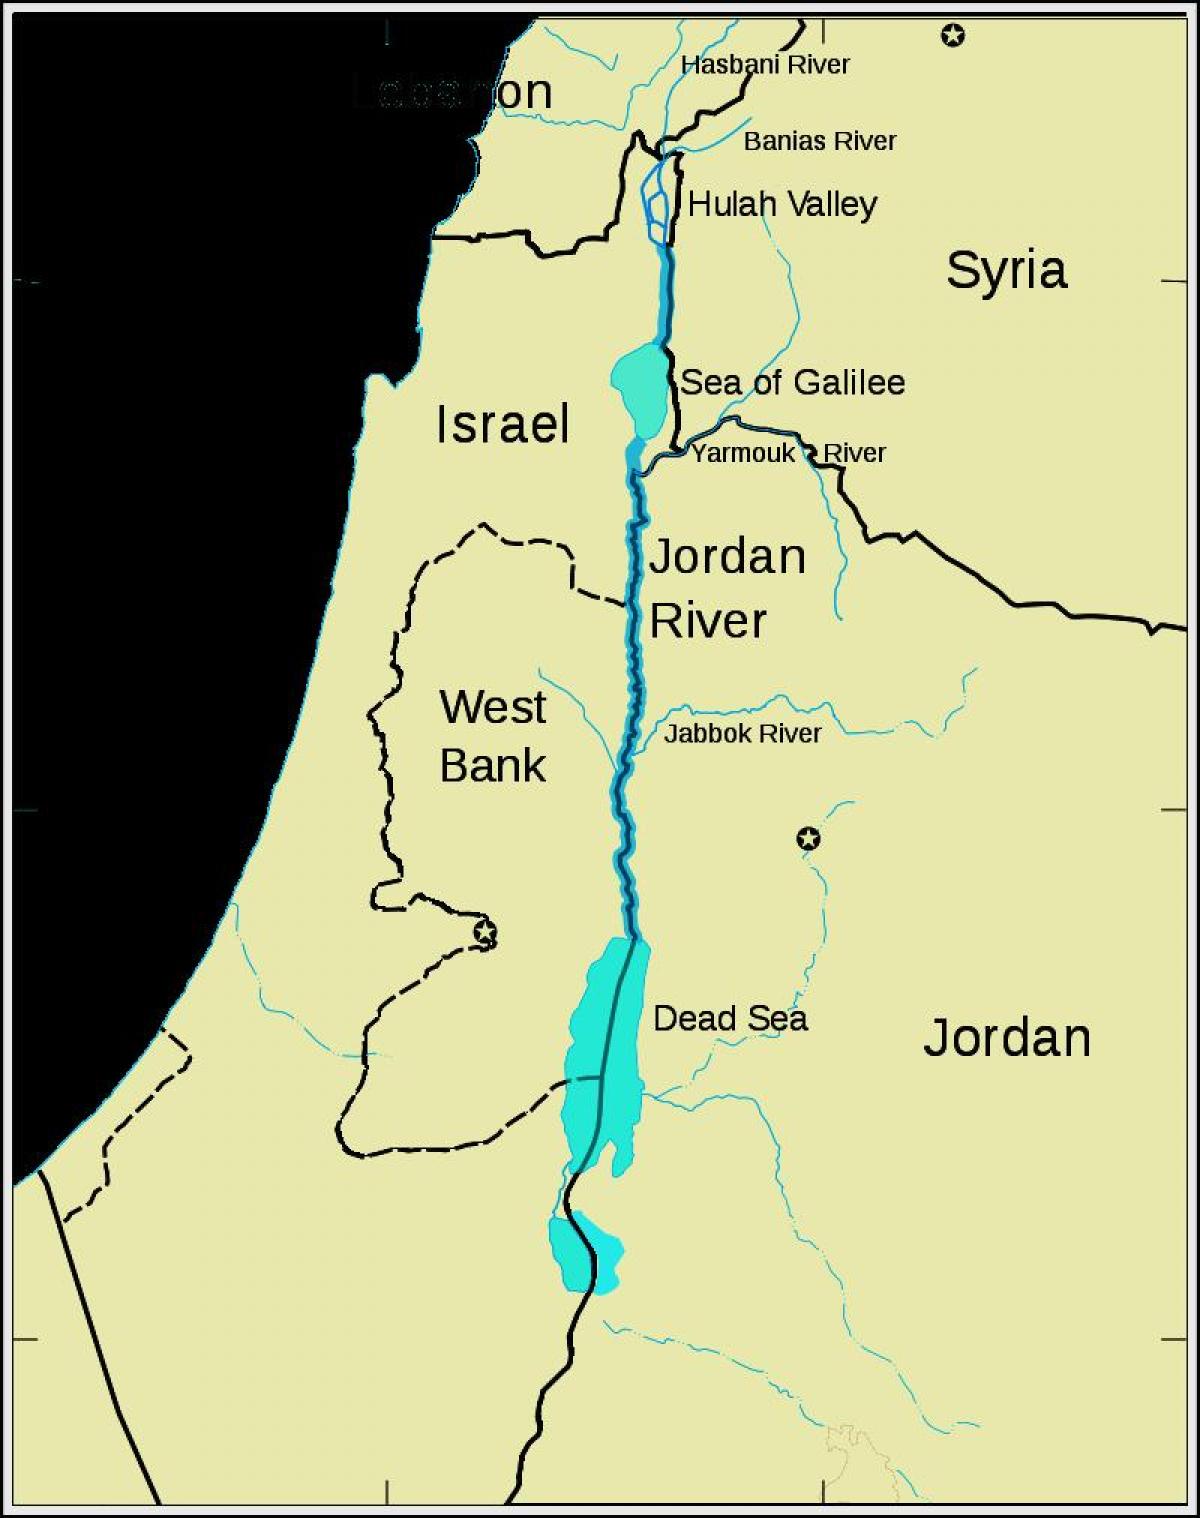 Jordan ibaiaren ekialde hurbileko mapa